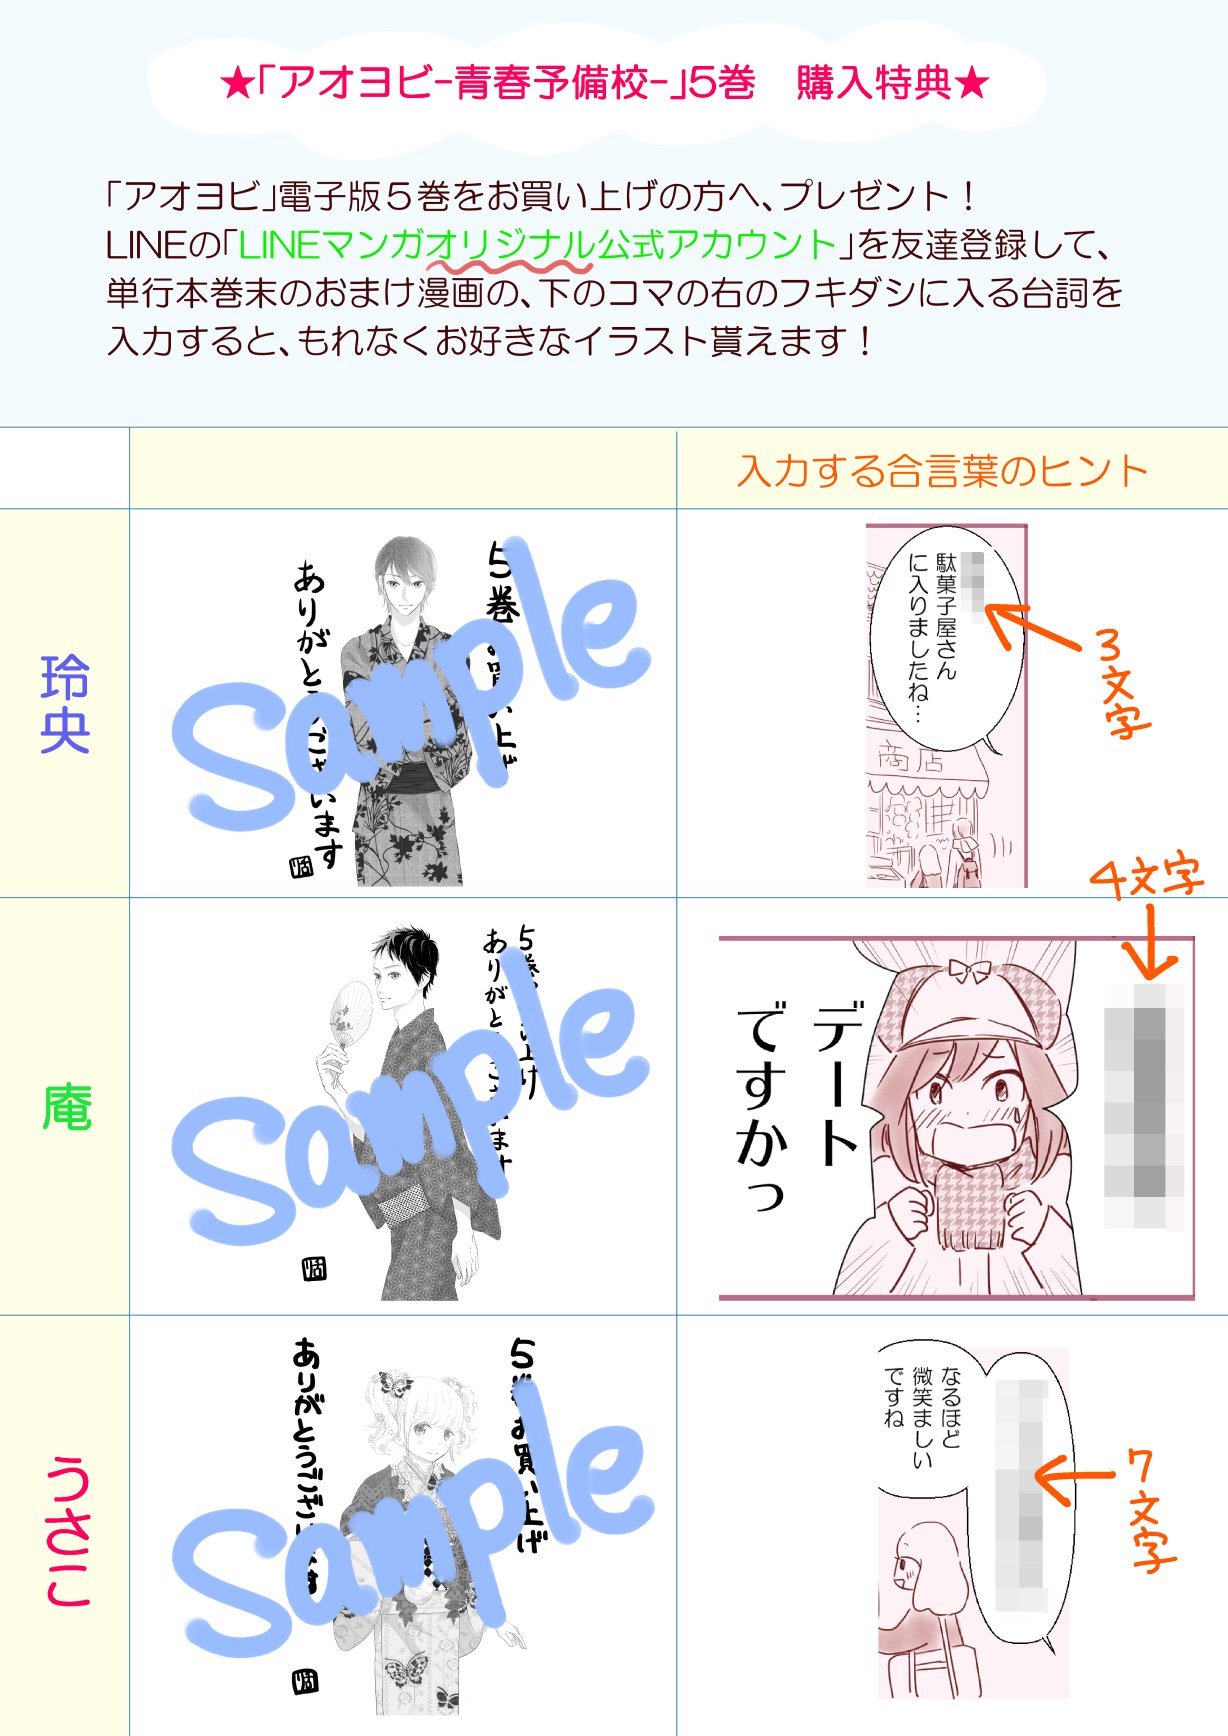 8 10発売 Lineコミックス新刊発売 Twitter